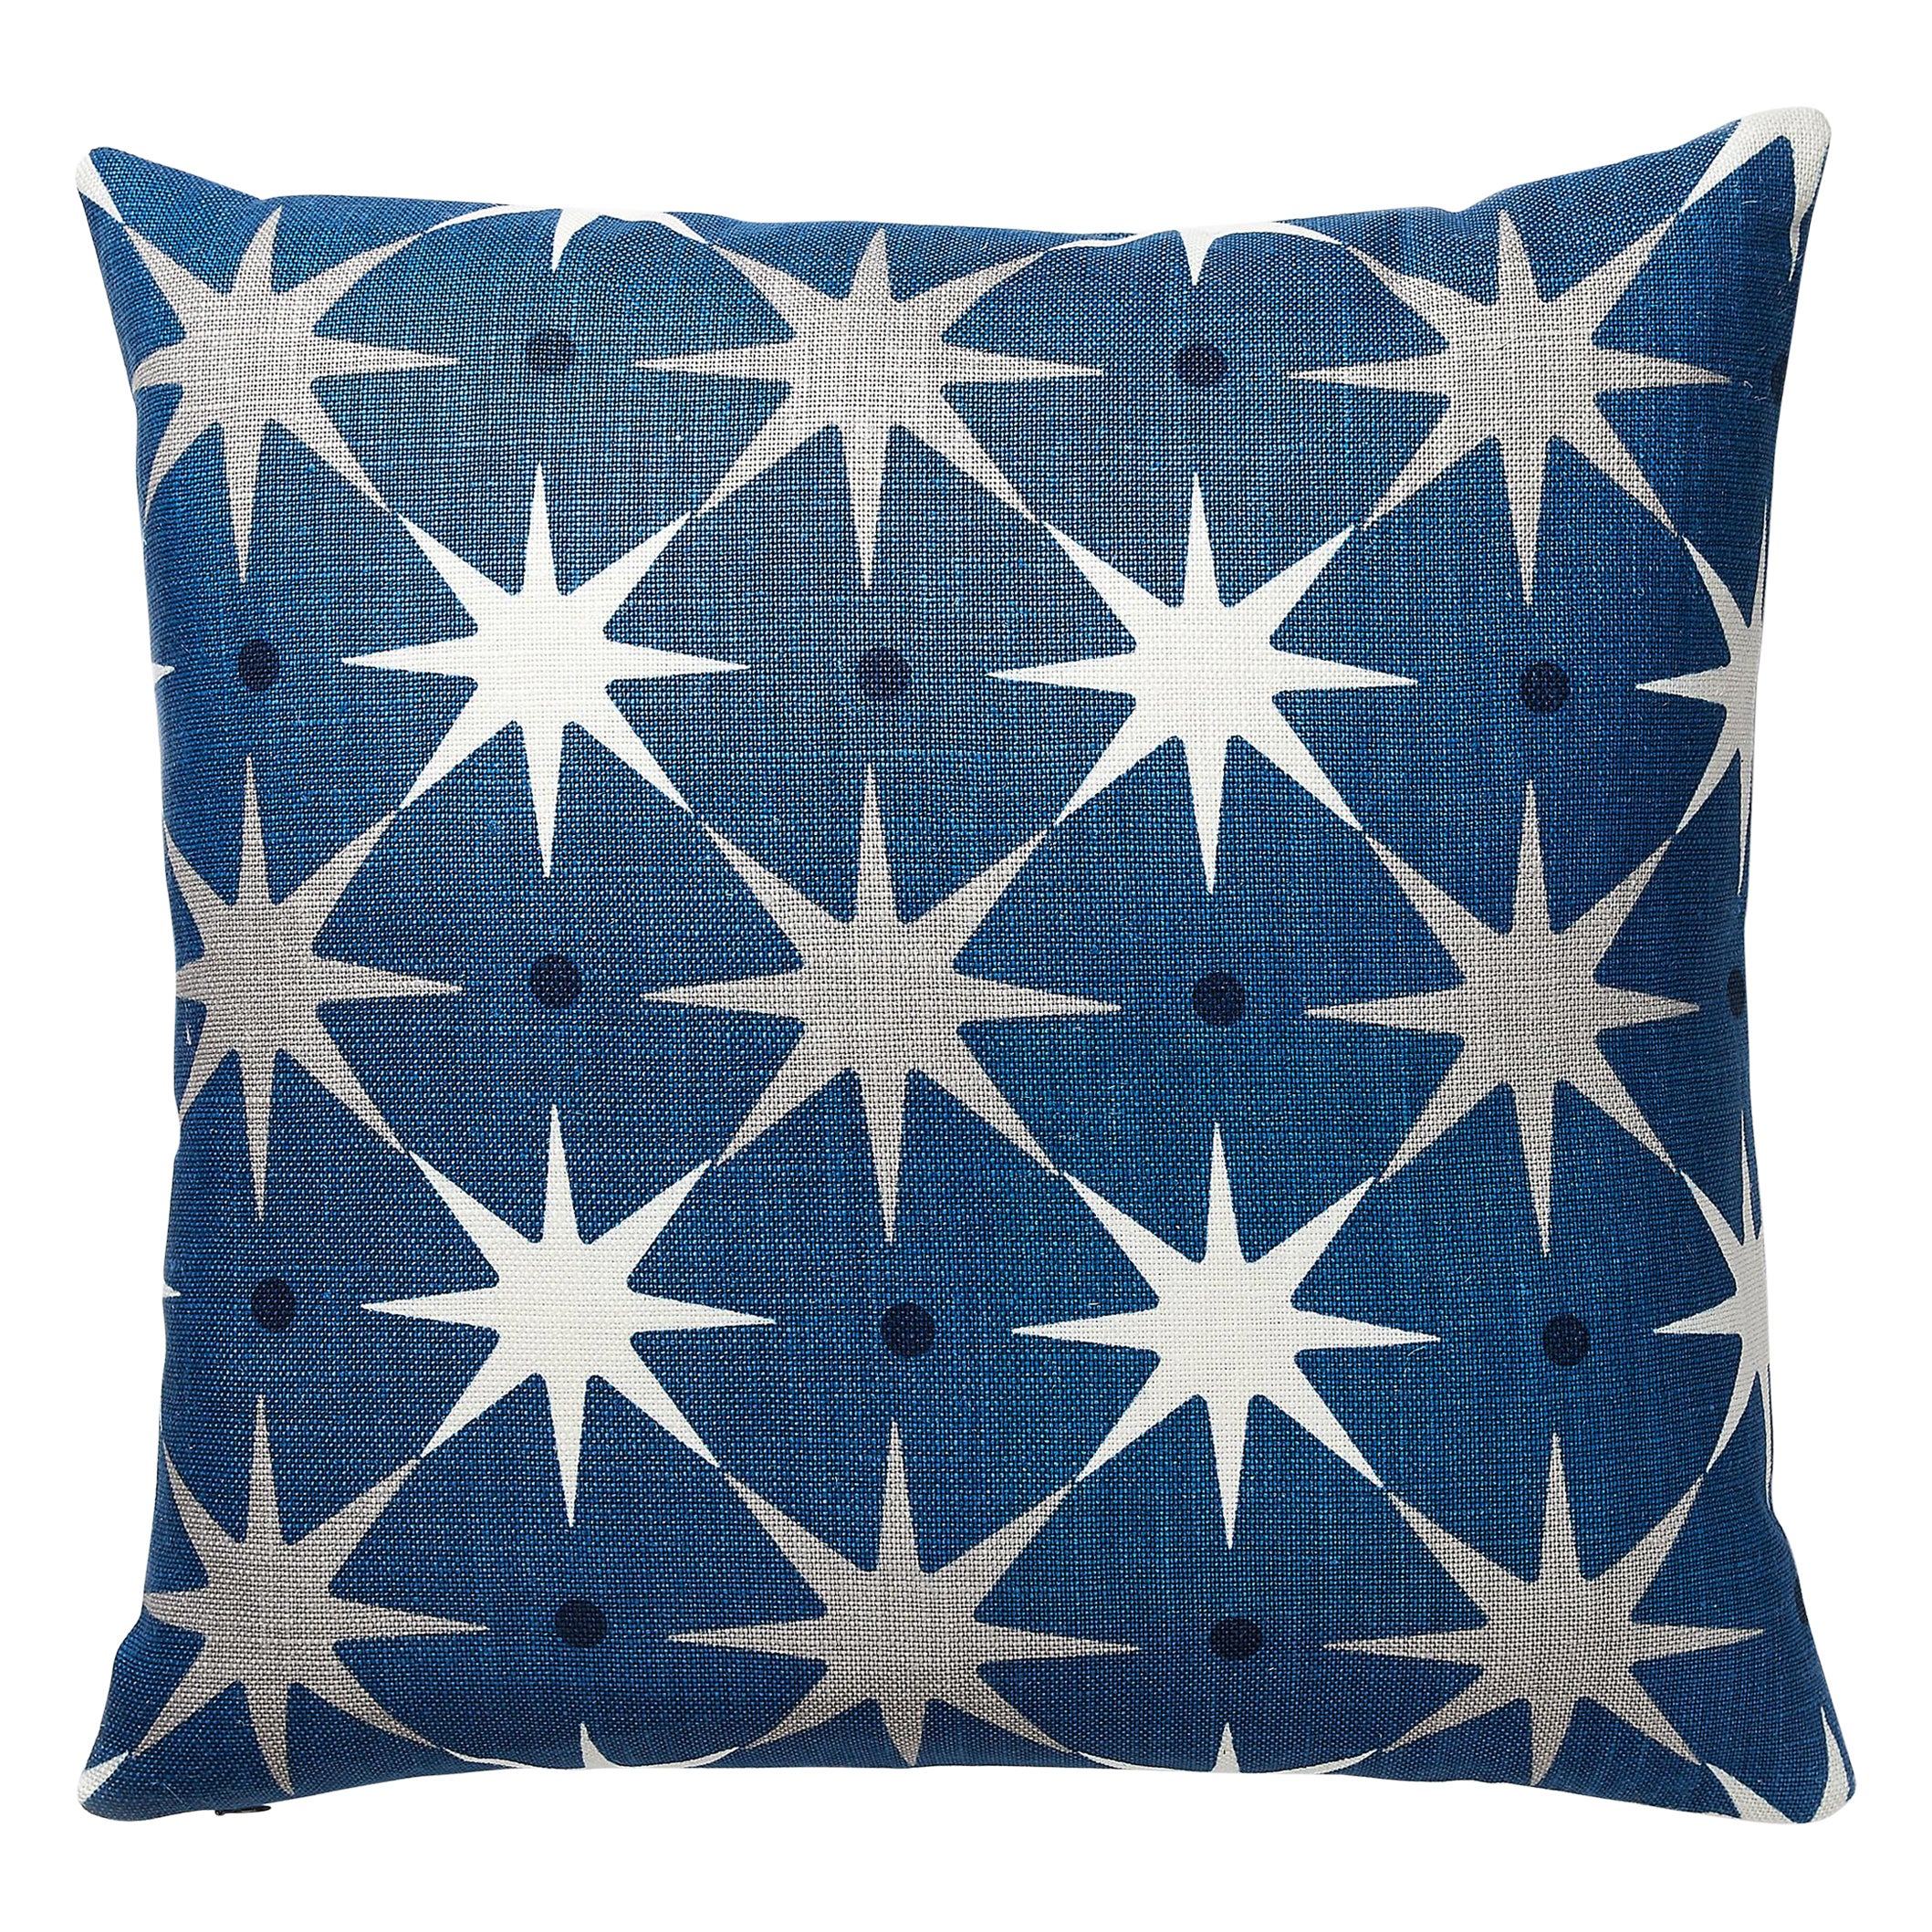 Star Power Pillow